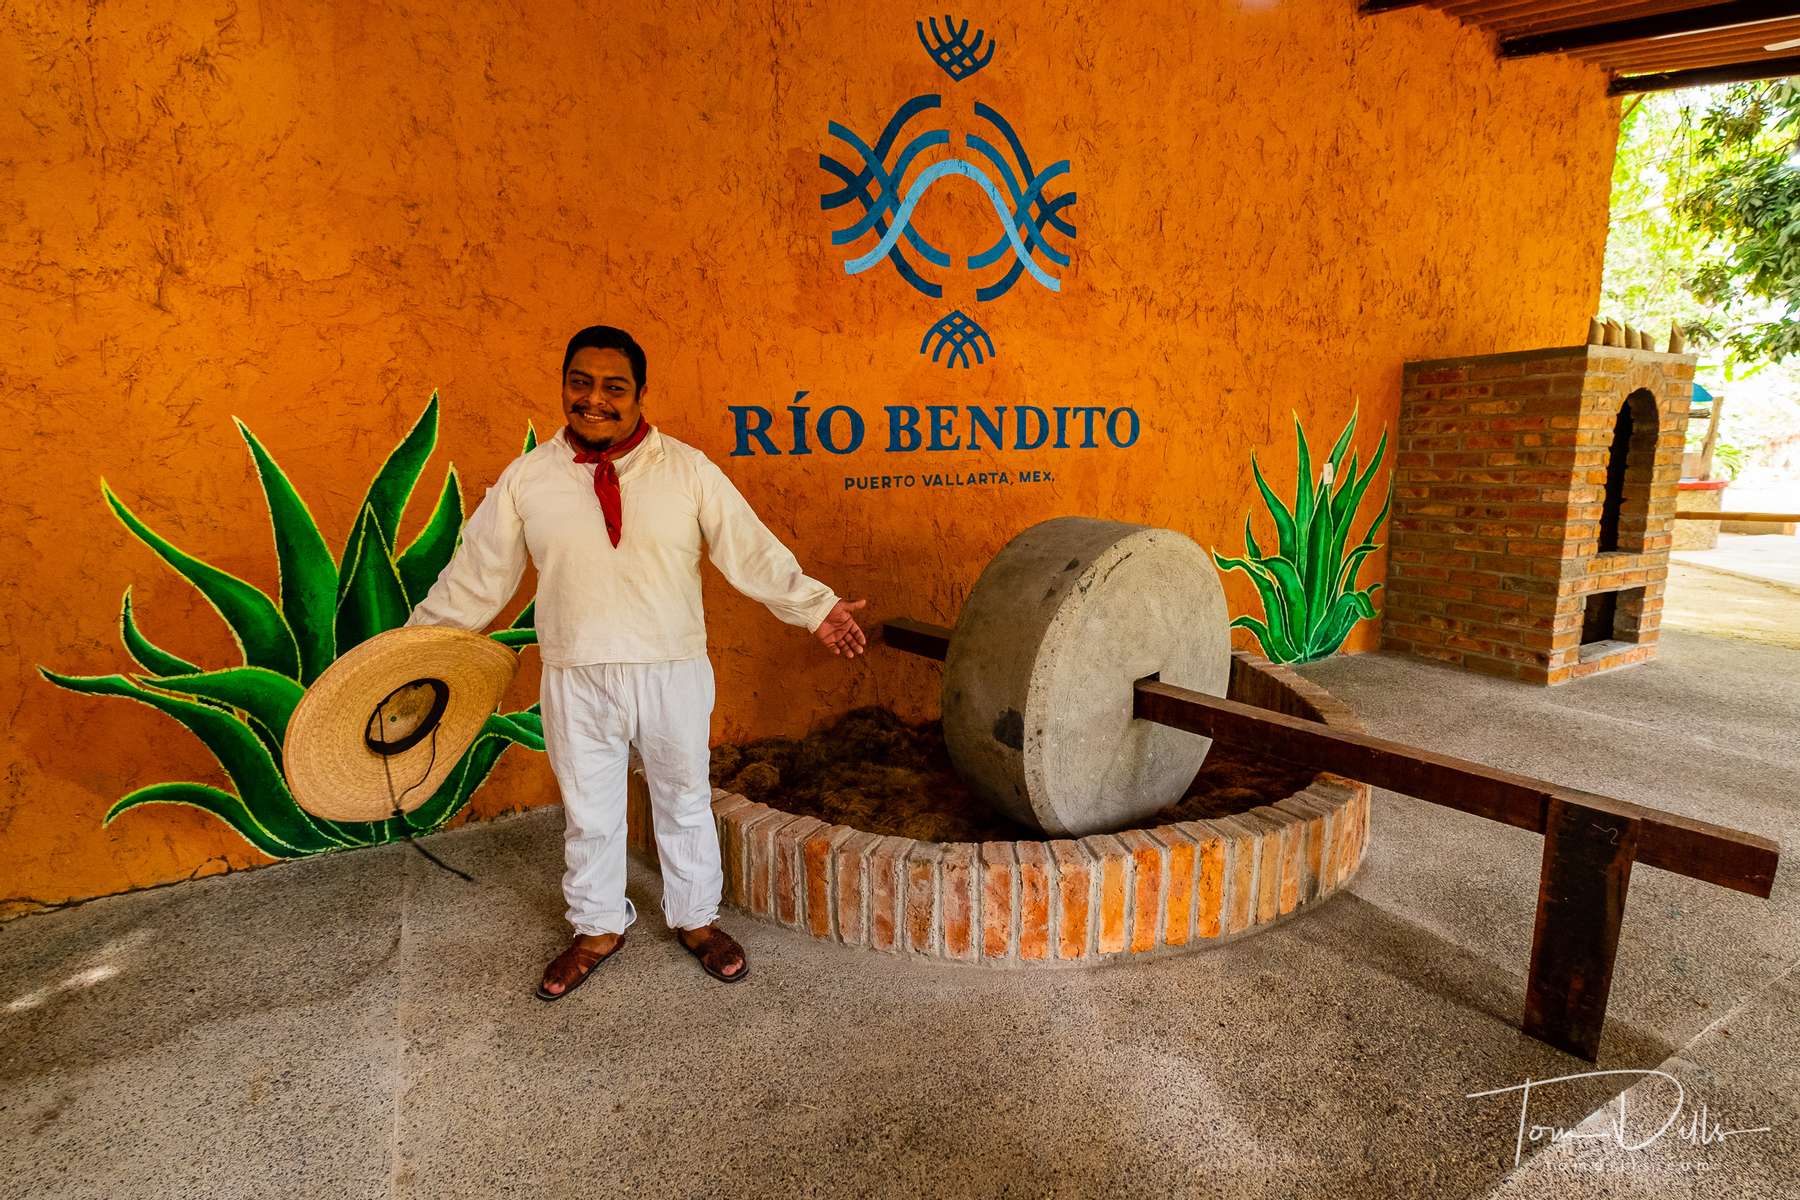 Rio Bendito tequila distillery in Puerto Vallarta Mexico